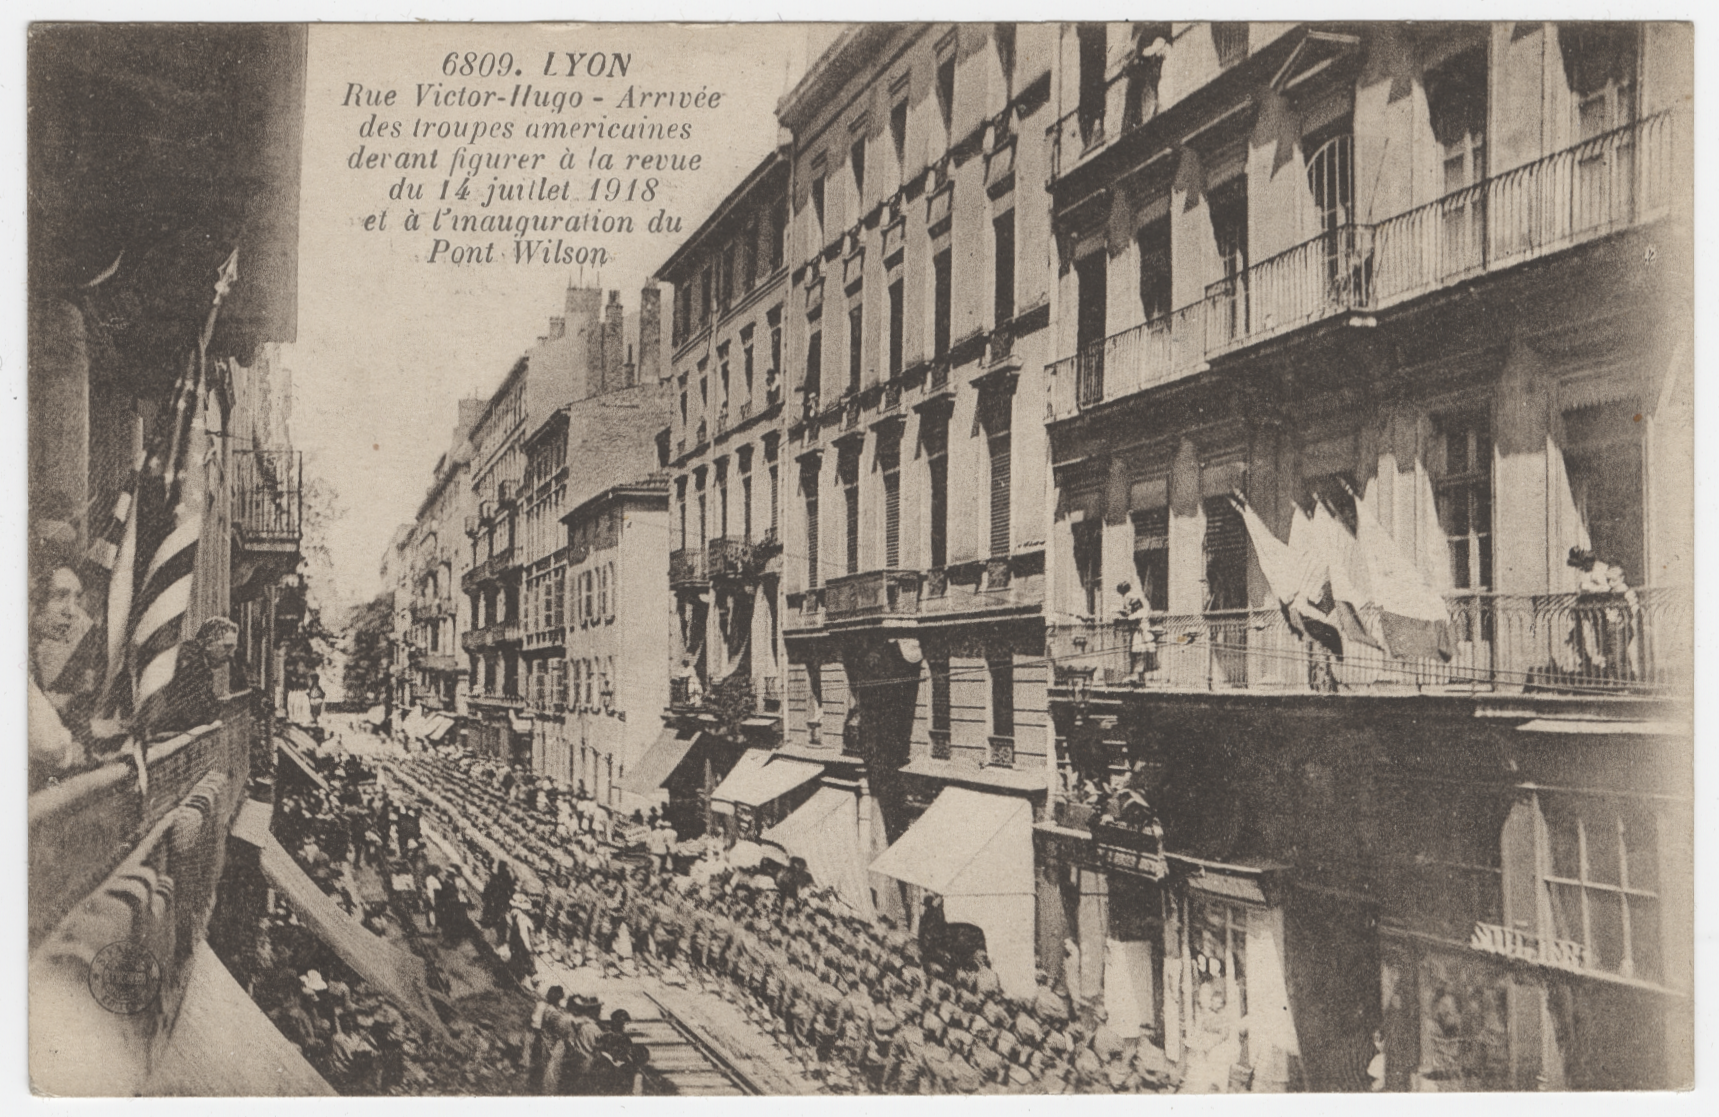 Arrivée des troupes américaines sur la place Bellecour par la rue Victor Hugo, 14 juillet 1918 - 4FI/4820